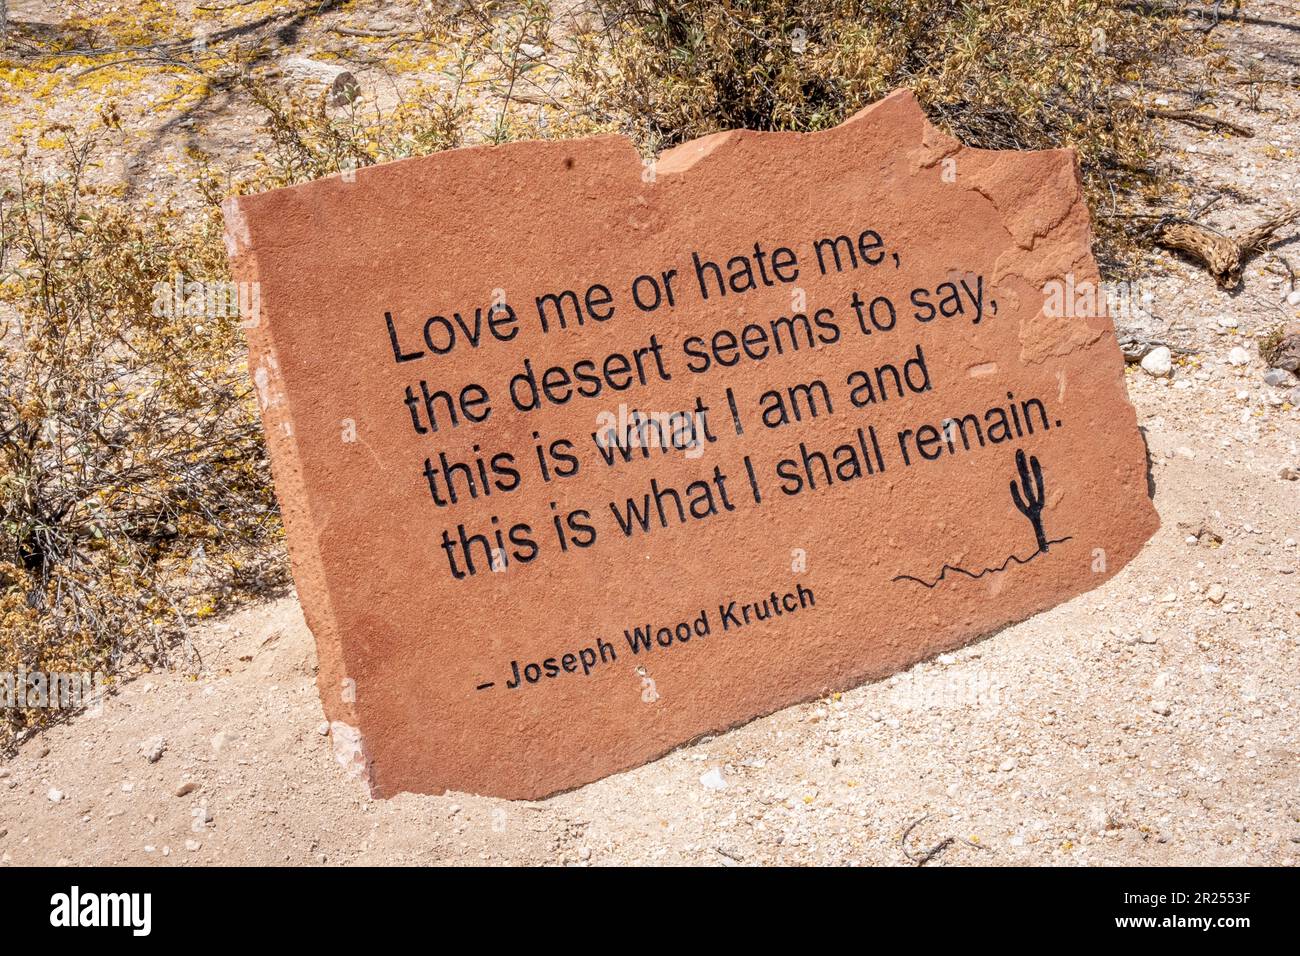 Citazione di Joseph Wood Krutch sul deserto, 'mi ama o odio, il deserto sembra dire, questo è ciò che sono e questo ciò che resterò.' Foto Stock